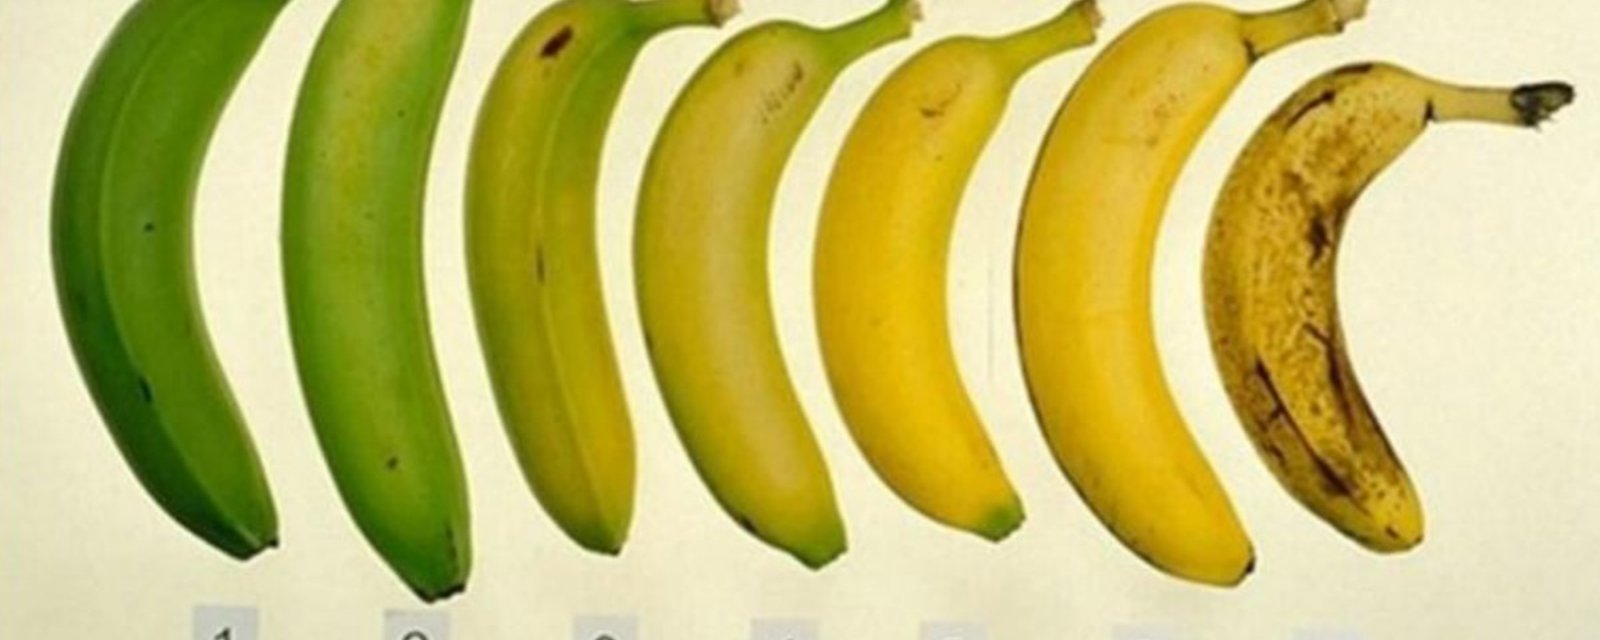 Savez-vous laquelle de ces 7 bananes est la meilleure pour vous?